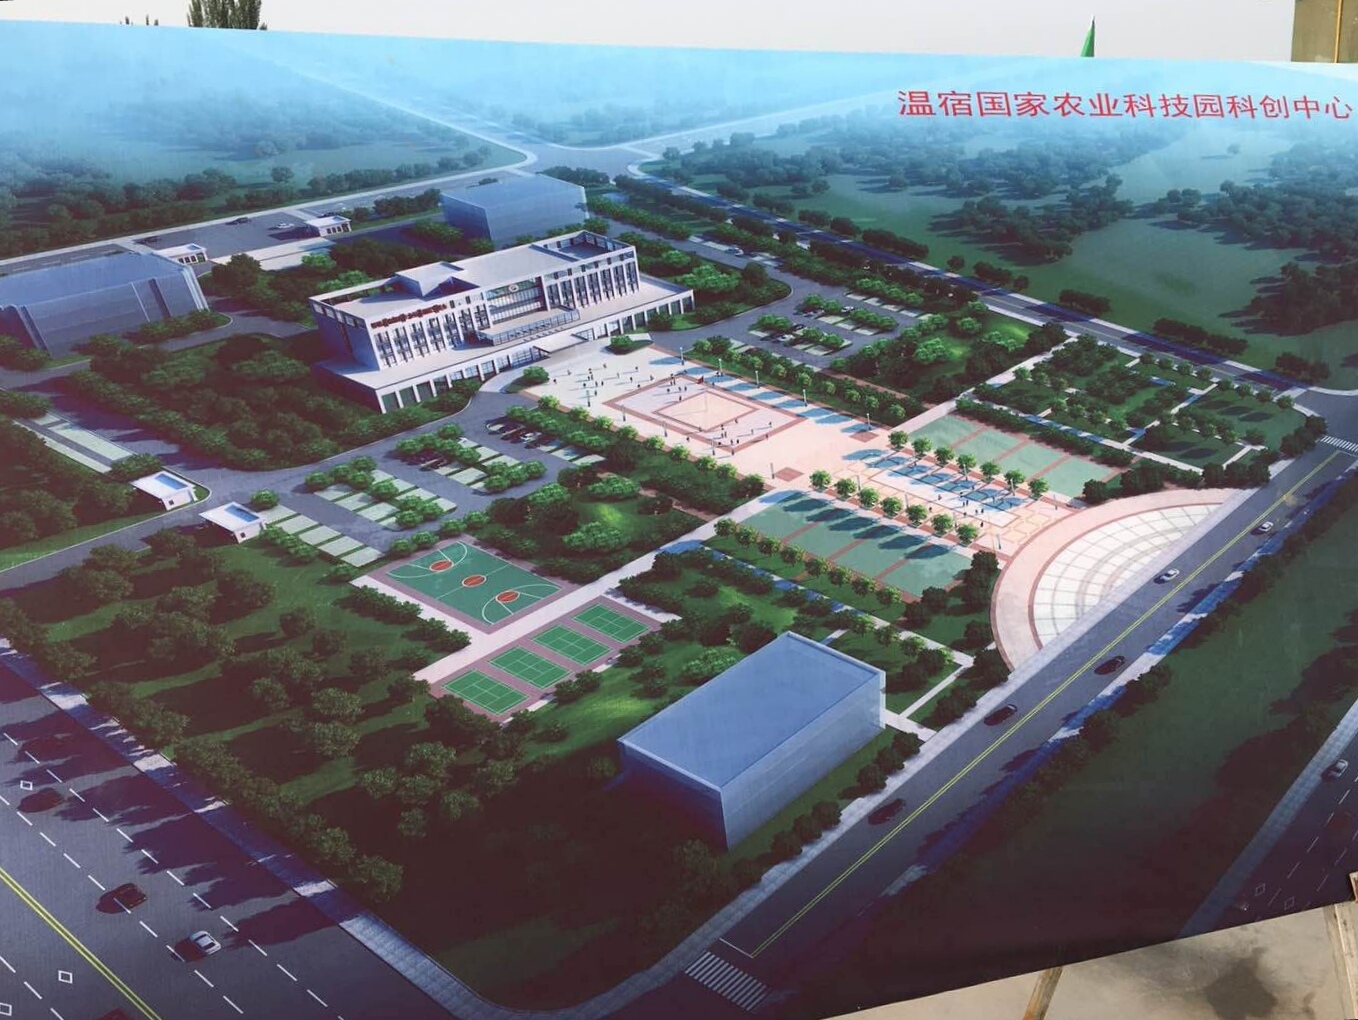 科创中心建设项目由浙江省金华市对口支援新疆阿克苏地区温宿县指挥部